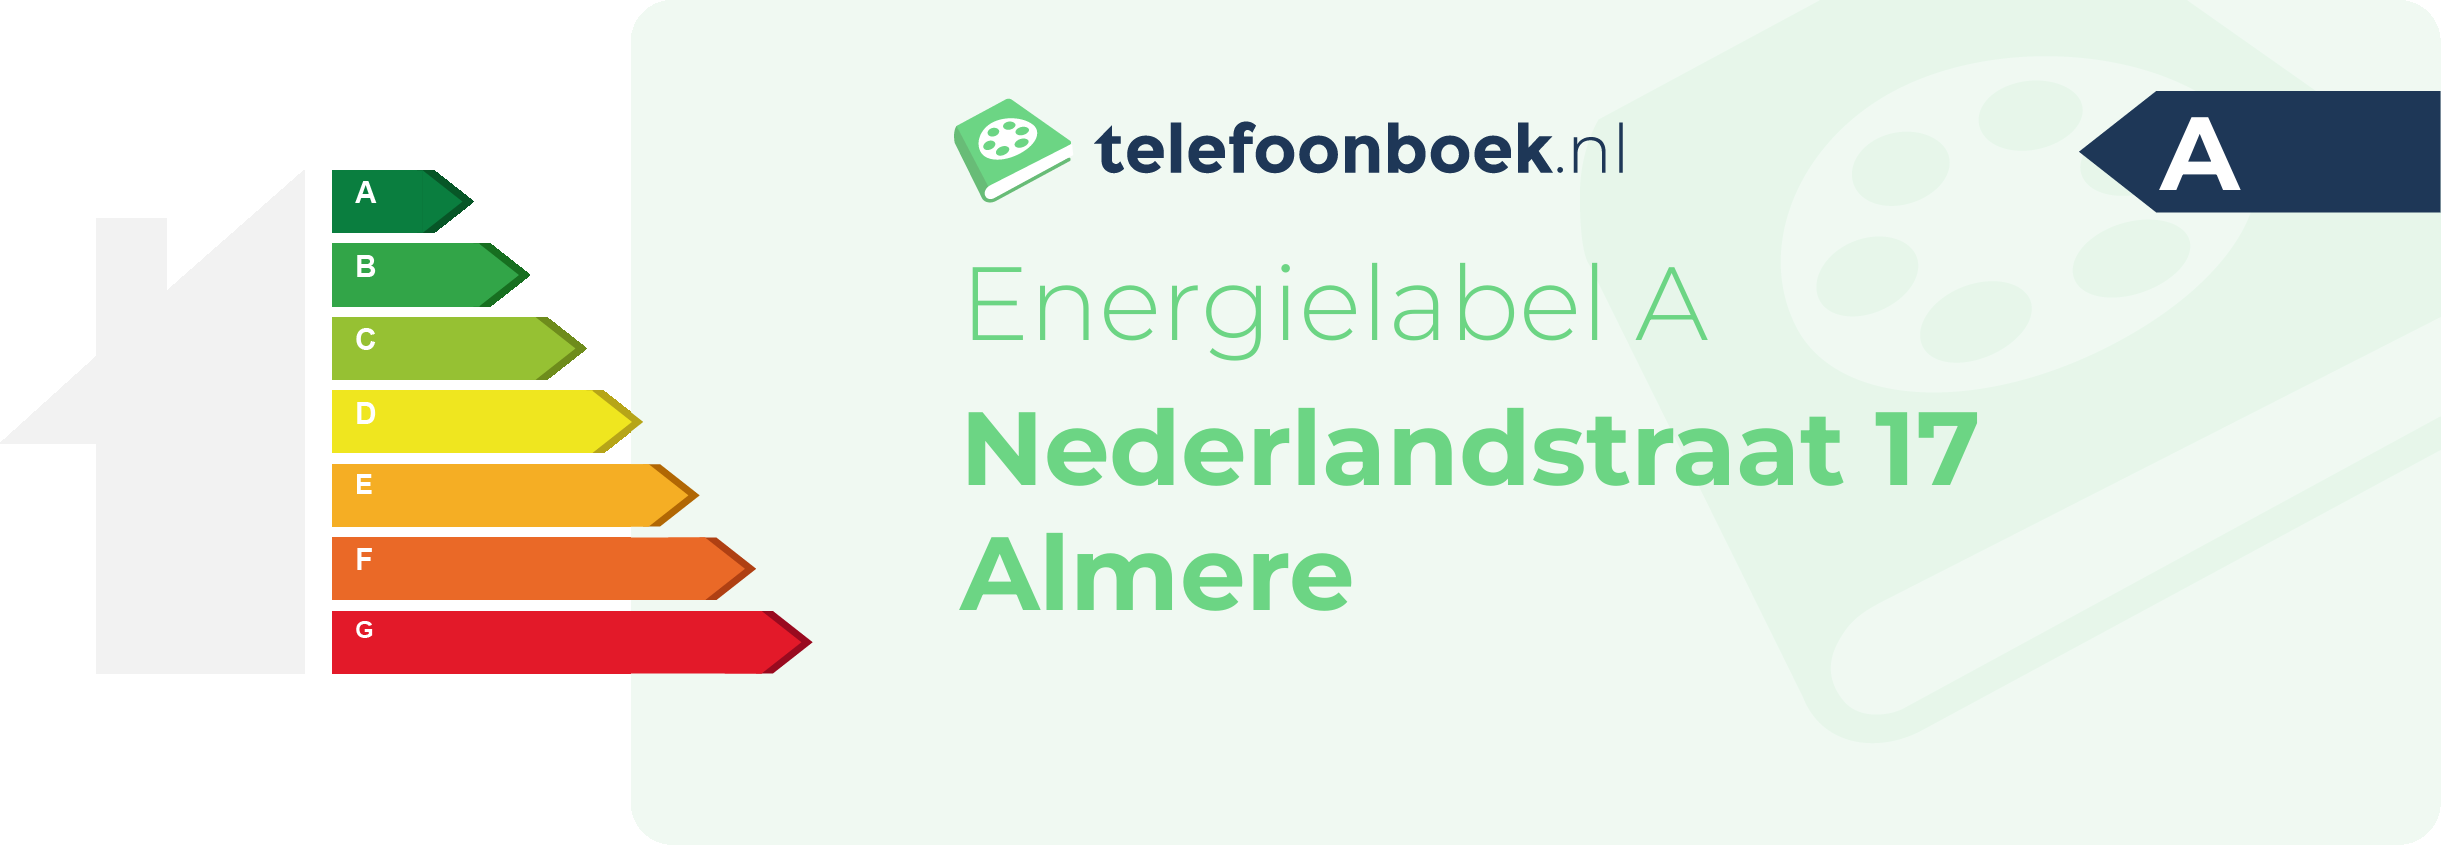 Energielabel Nederlandstraat 17 Almere